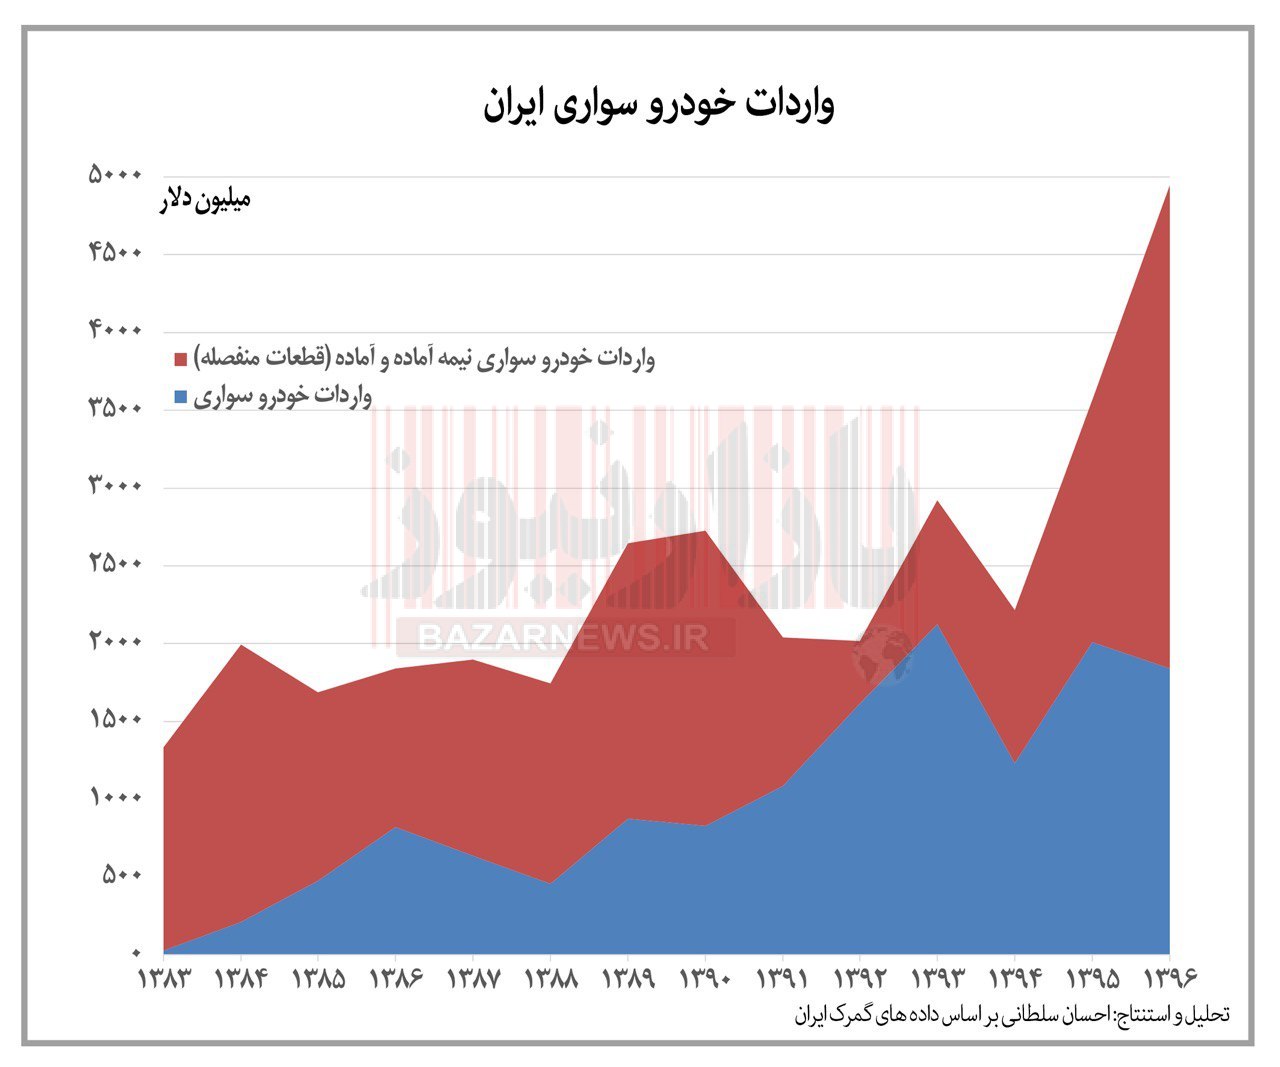 نیمه پنهان تولید خودرو در ایران